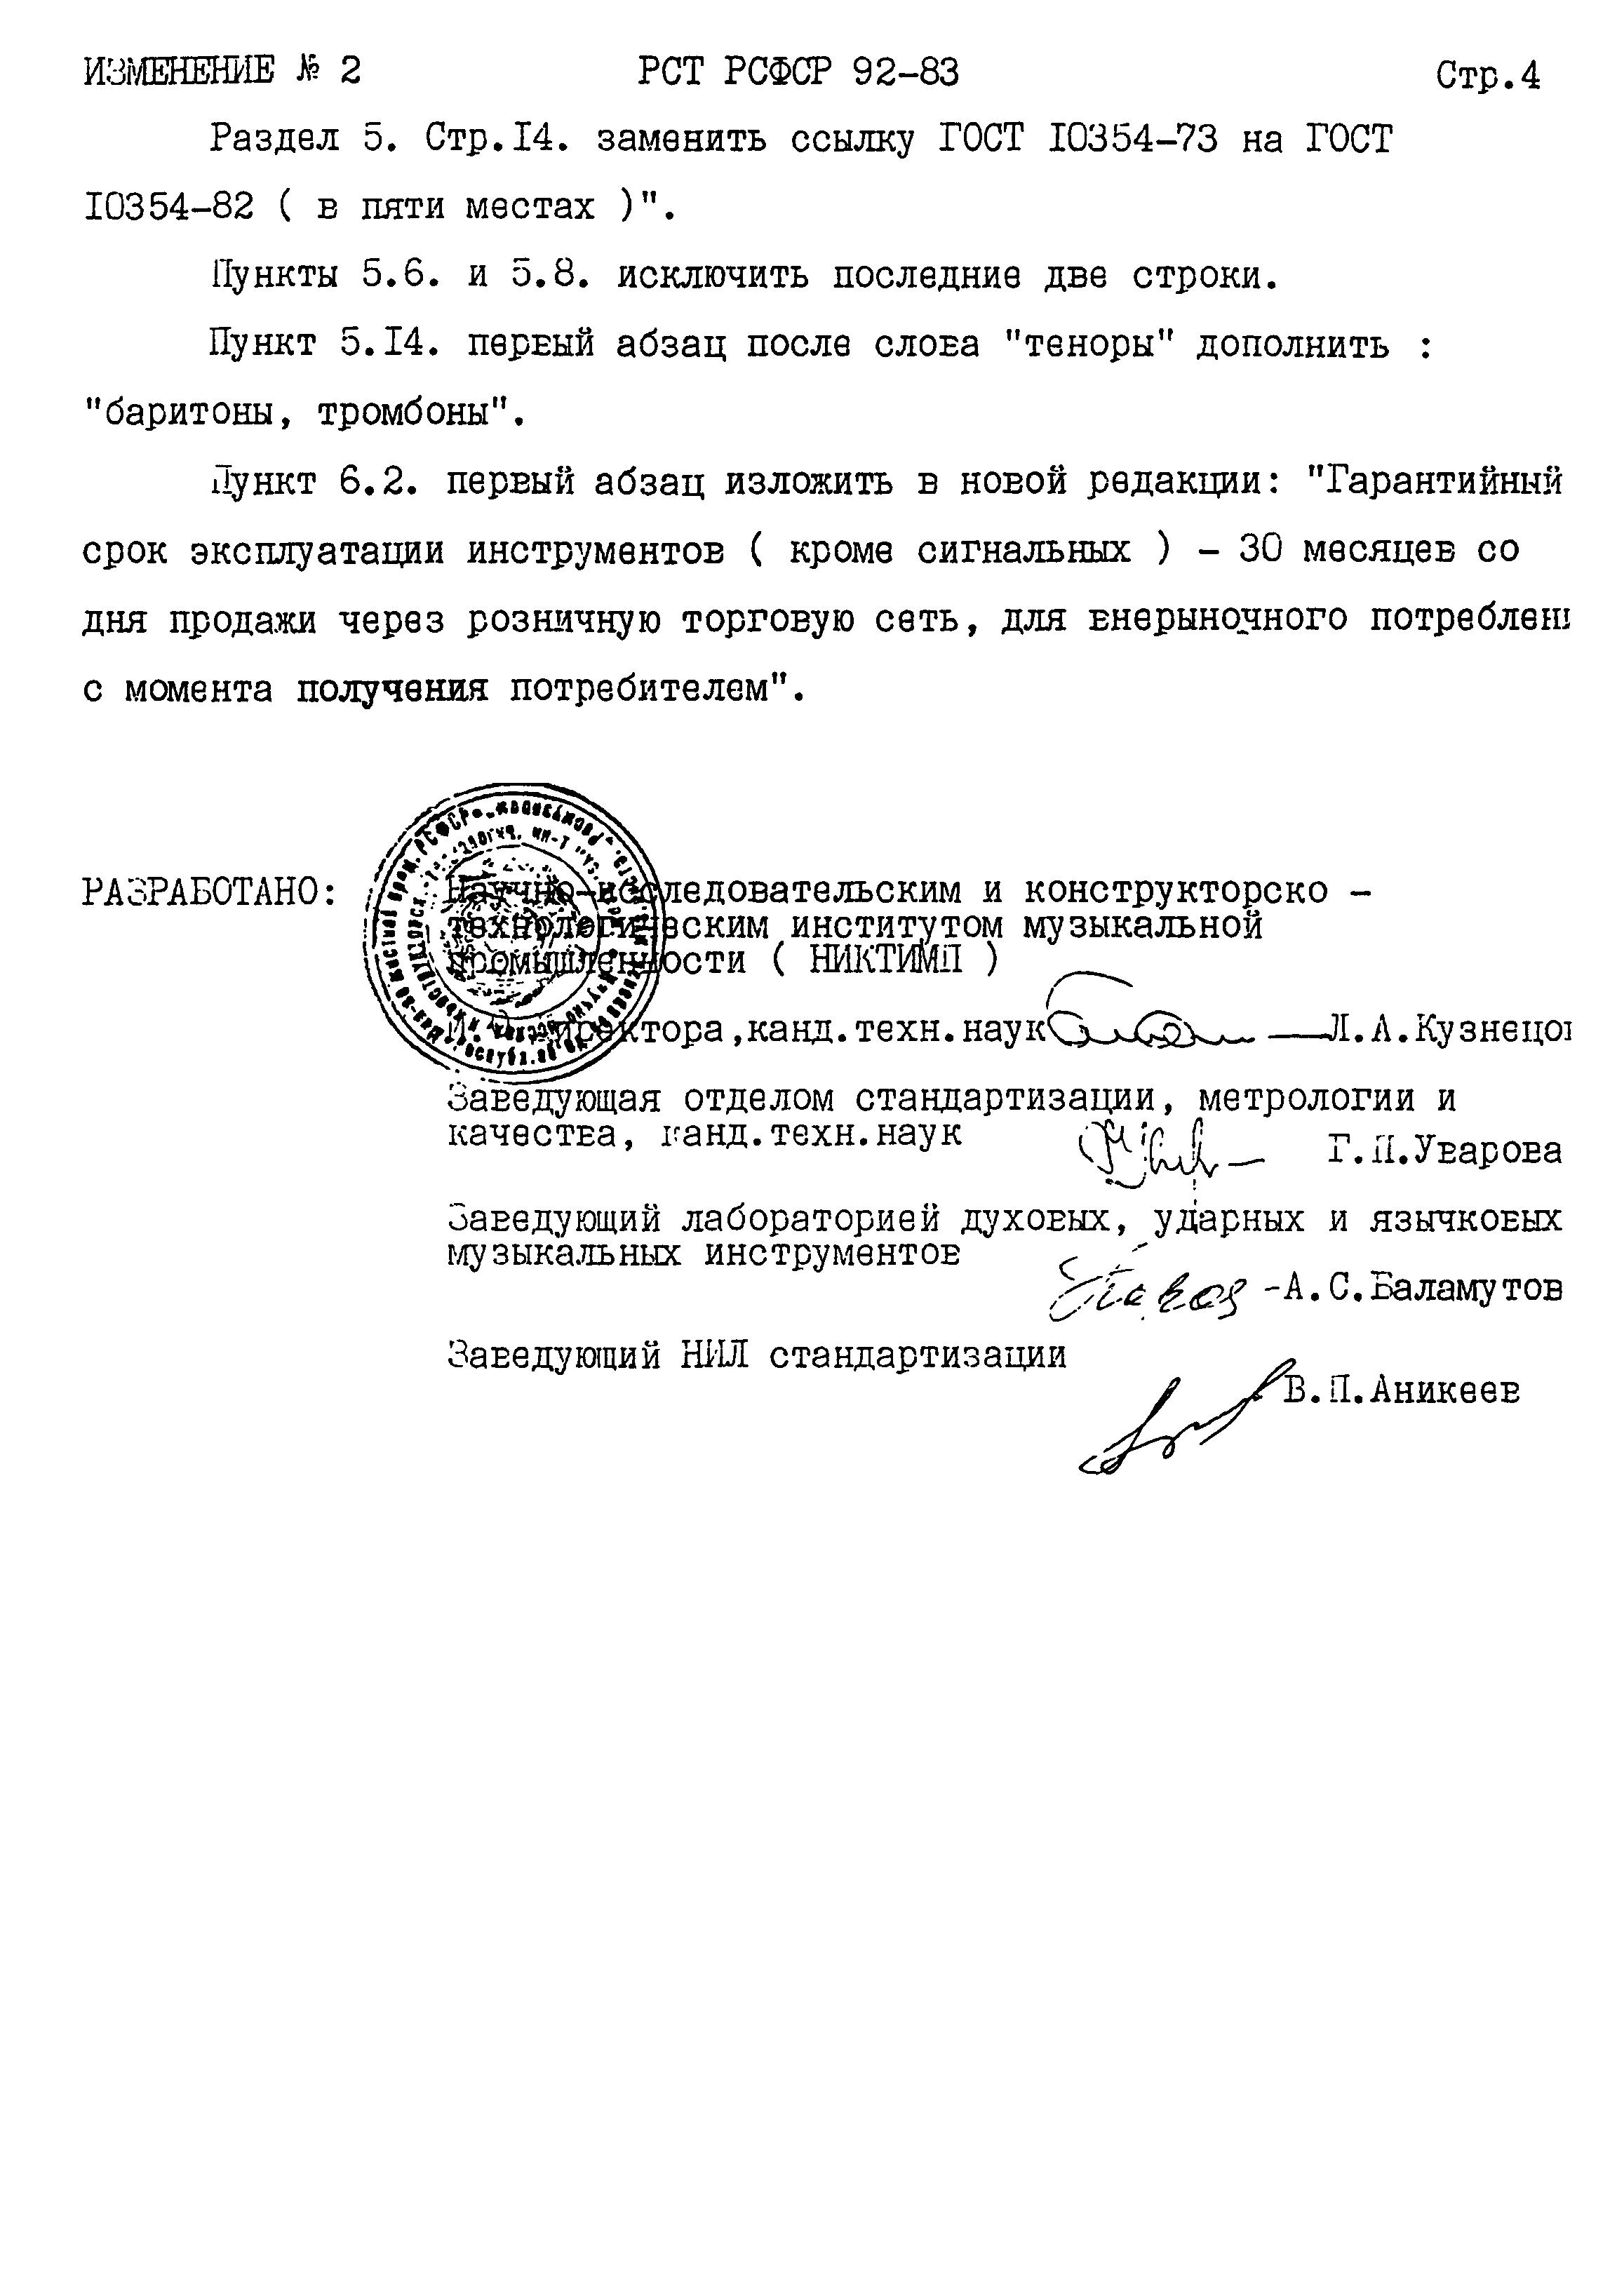 РСТ РСФСР 92-83